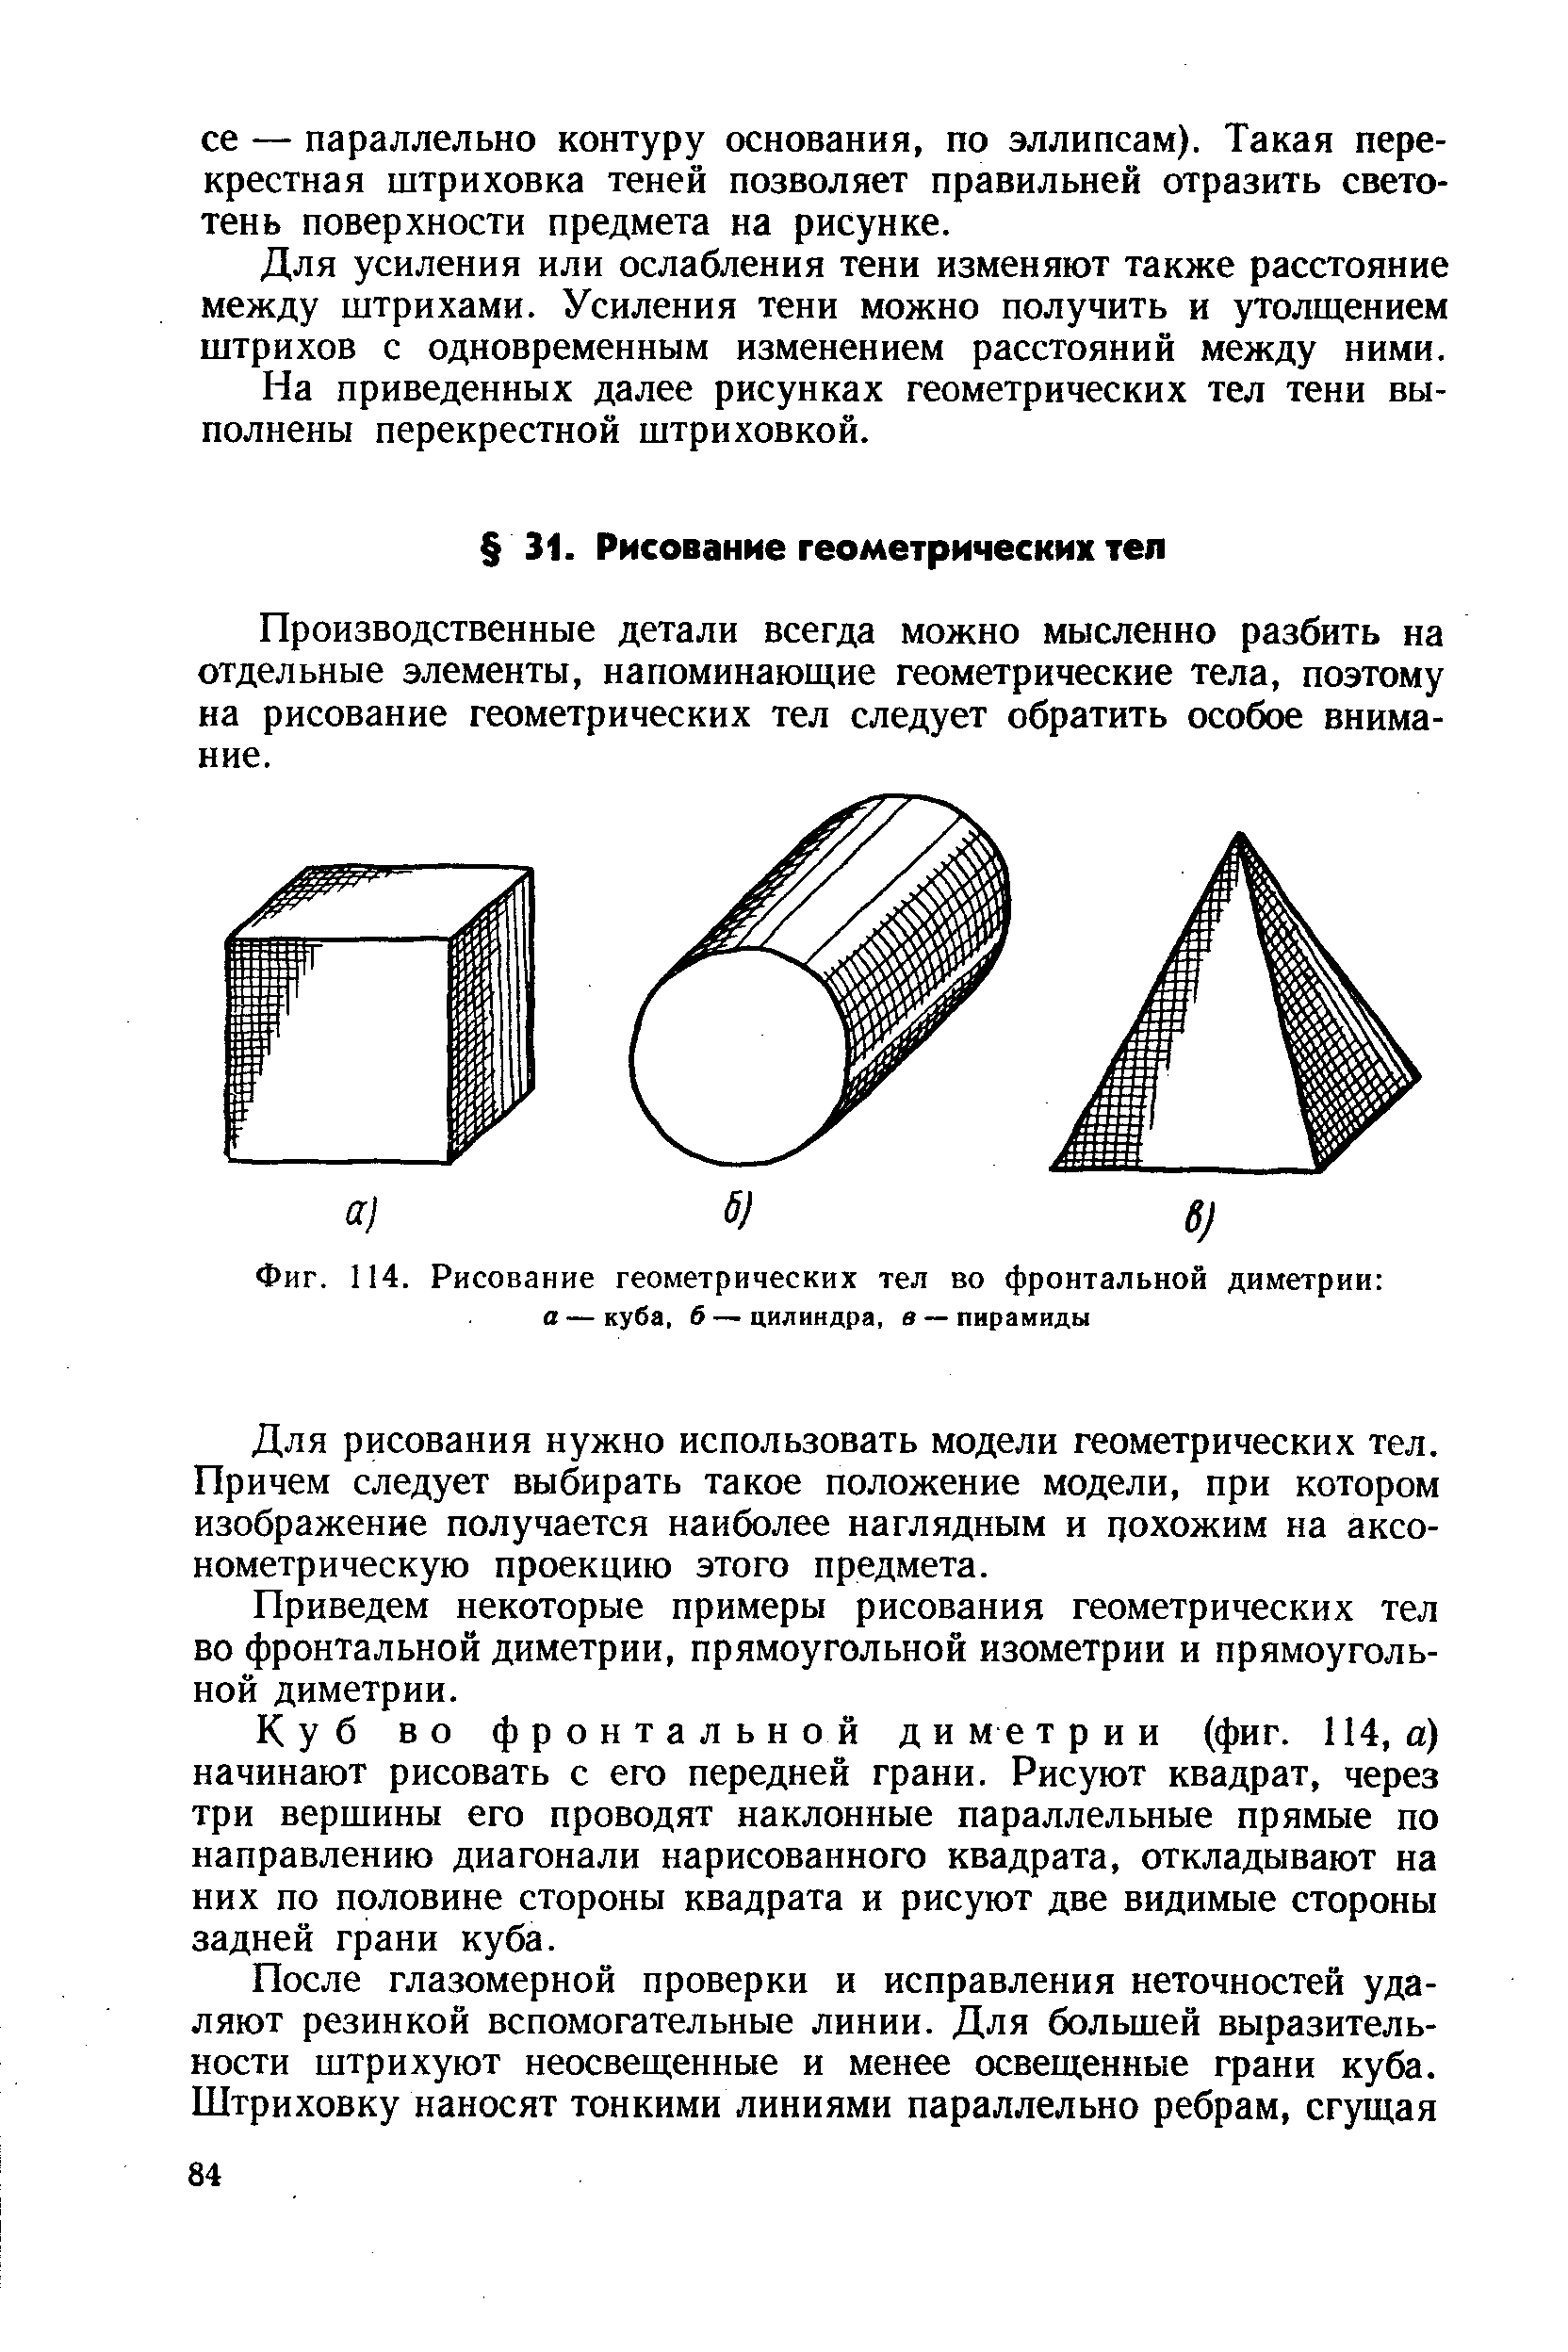 Фиг. 114. Рисование геометрических тел во фронтальной диметрии а — куба, 6 — цилиндра, в — пирамиды
